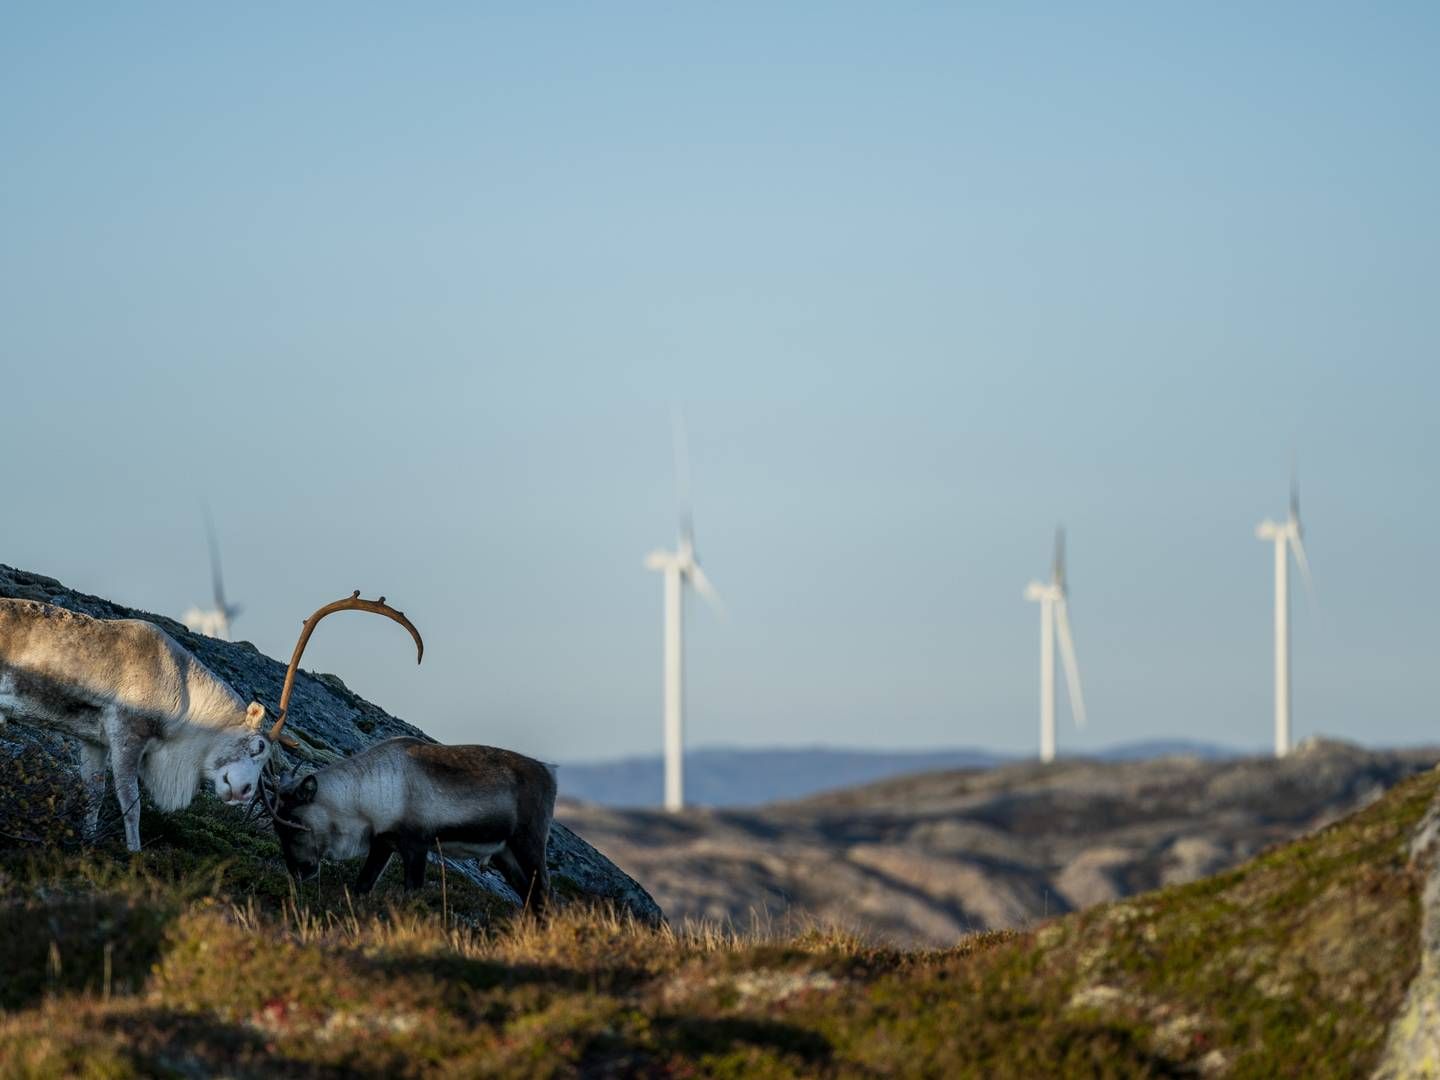 OMSTRIDT. Storheia vindkraftverk er blant parkene det har vært blest rundt i Fosen-saken. | Foto: Foto: Ole Martin Wold